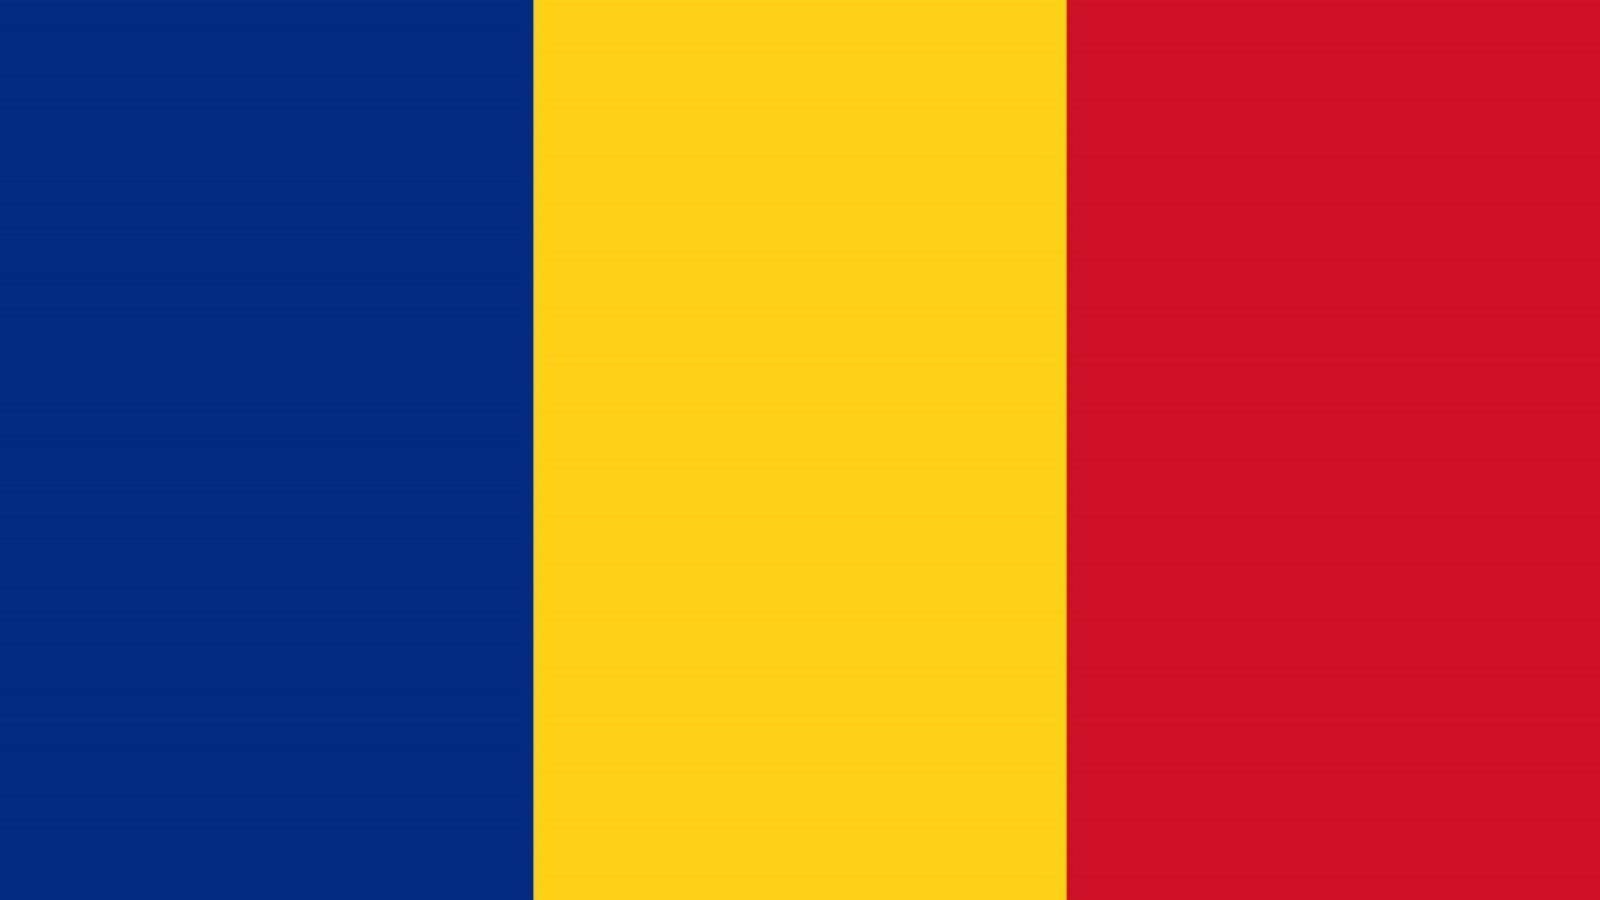 DSU Roumanie Très Important ATTENTION Tous les Roumains